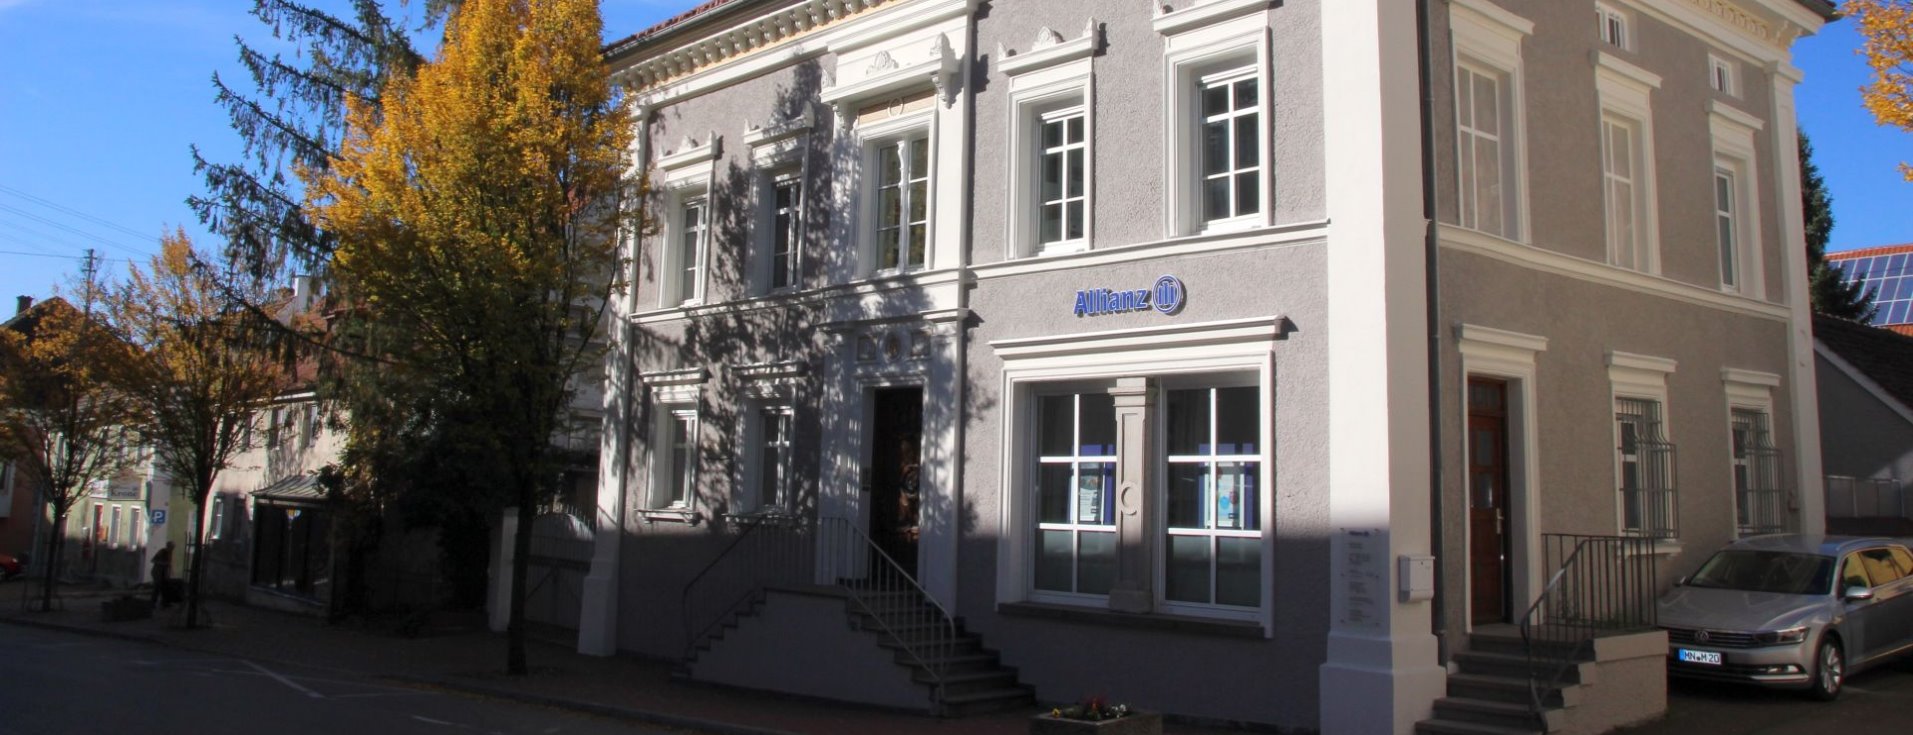 Allianz Versicherung Martin Sutter Pfaffenhausen - Büro Babenhausen